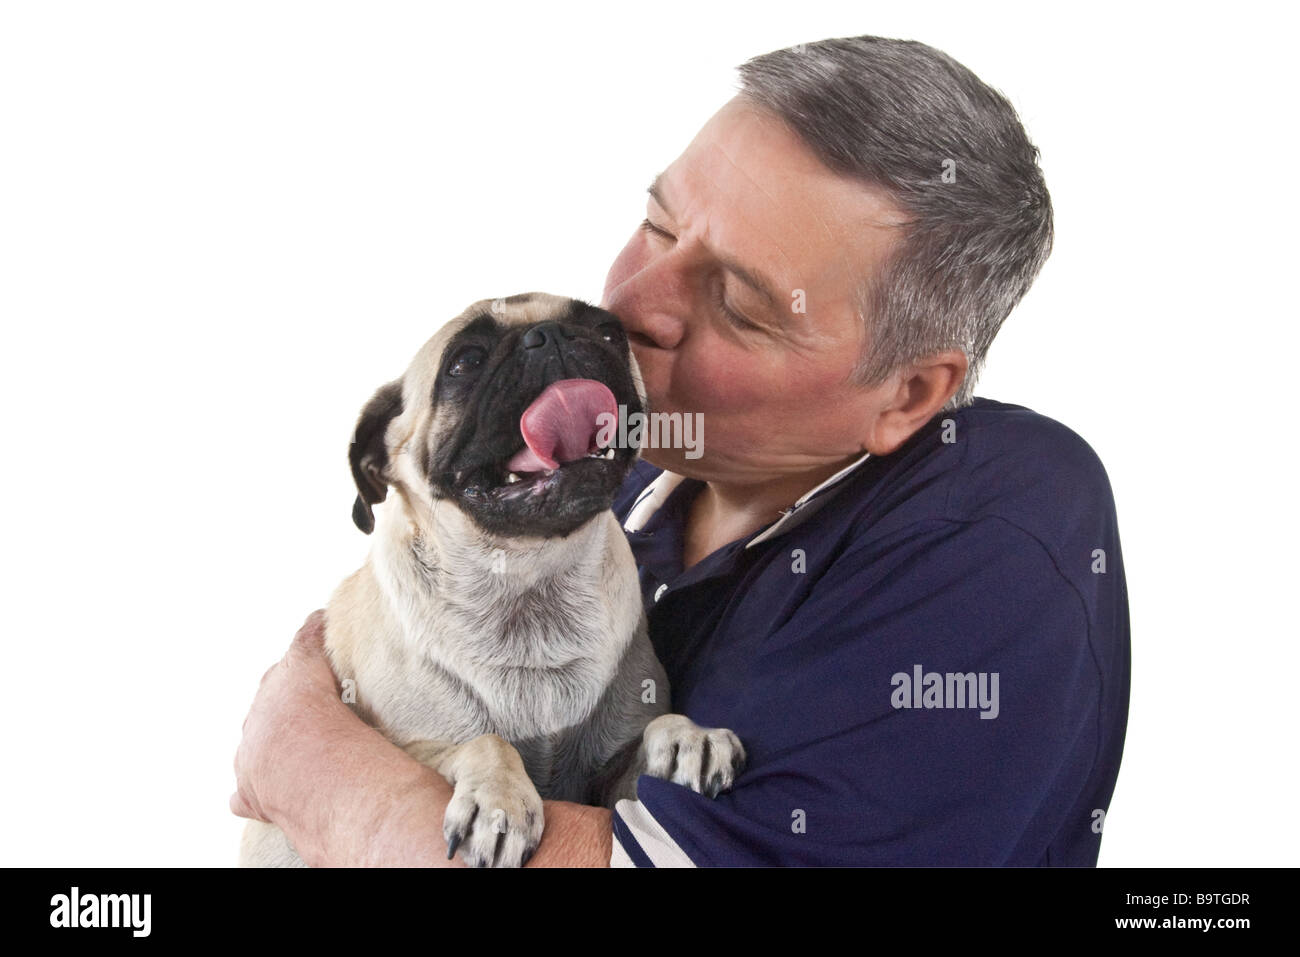 Mature man holding a Pug dogs avec sa langue maternelle a collé dehors isolé sur fond blanc Banque D'Images